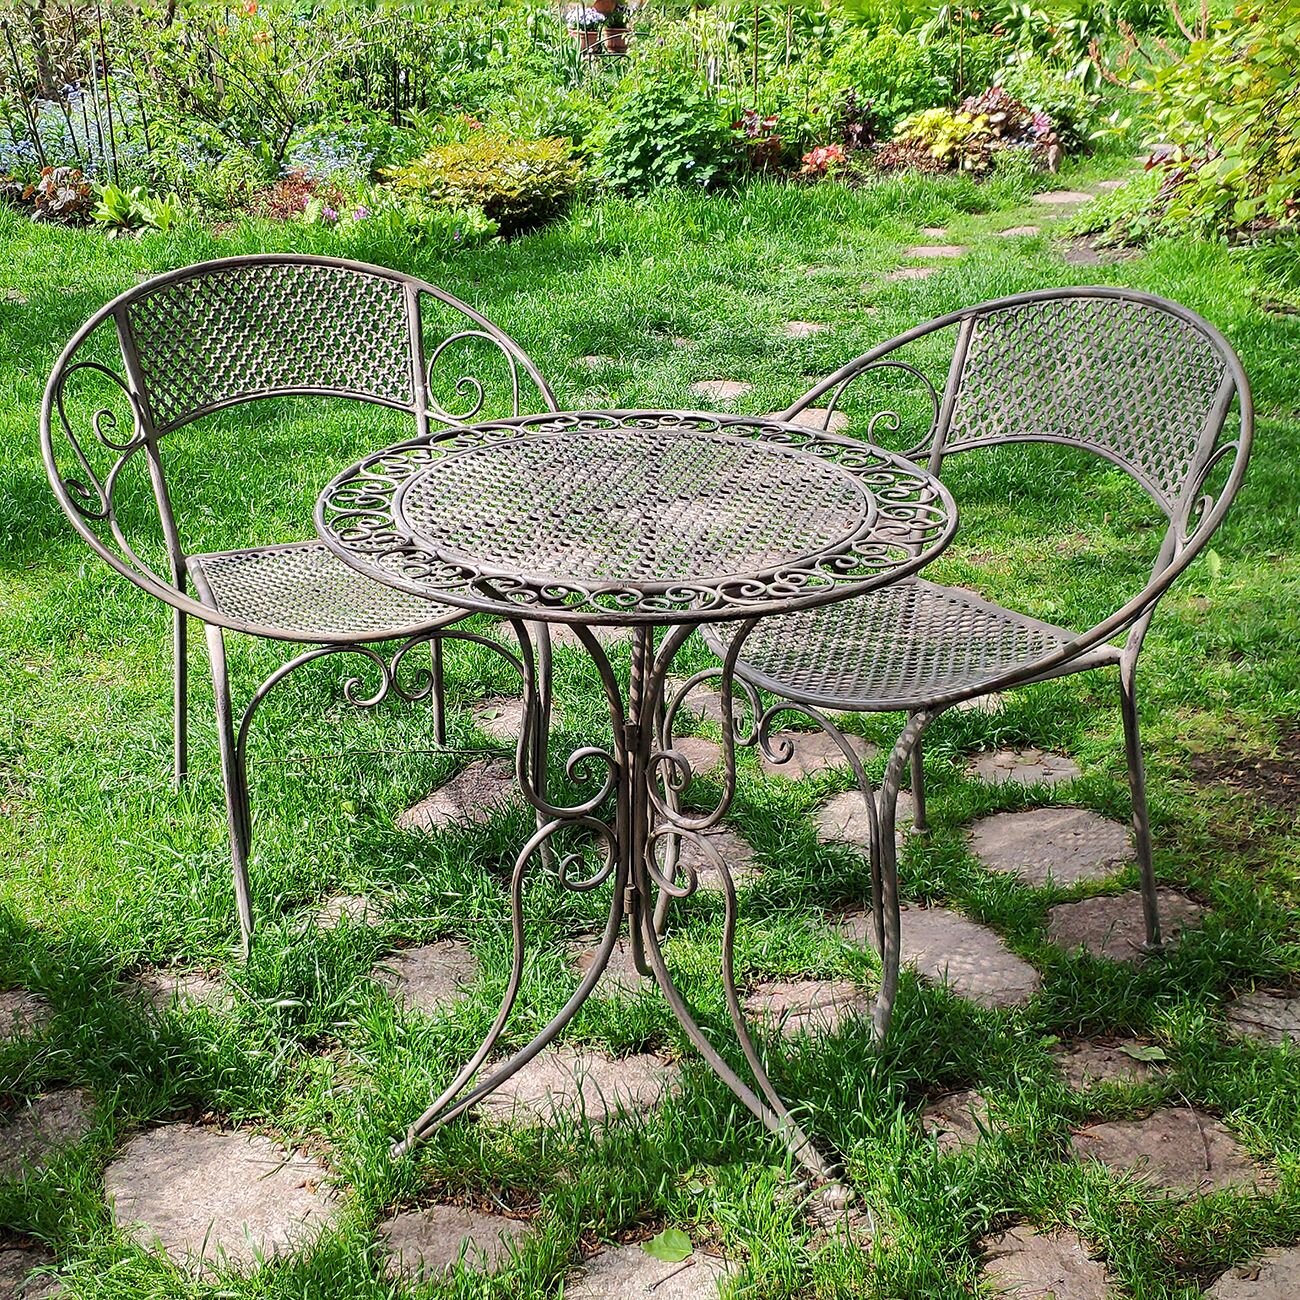 Edelman Комплект садовой мебели Триббиани: 1 стол + 2 кресла серый 1023734